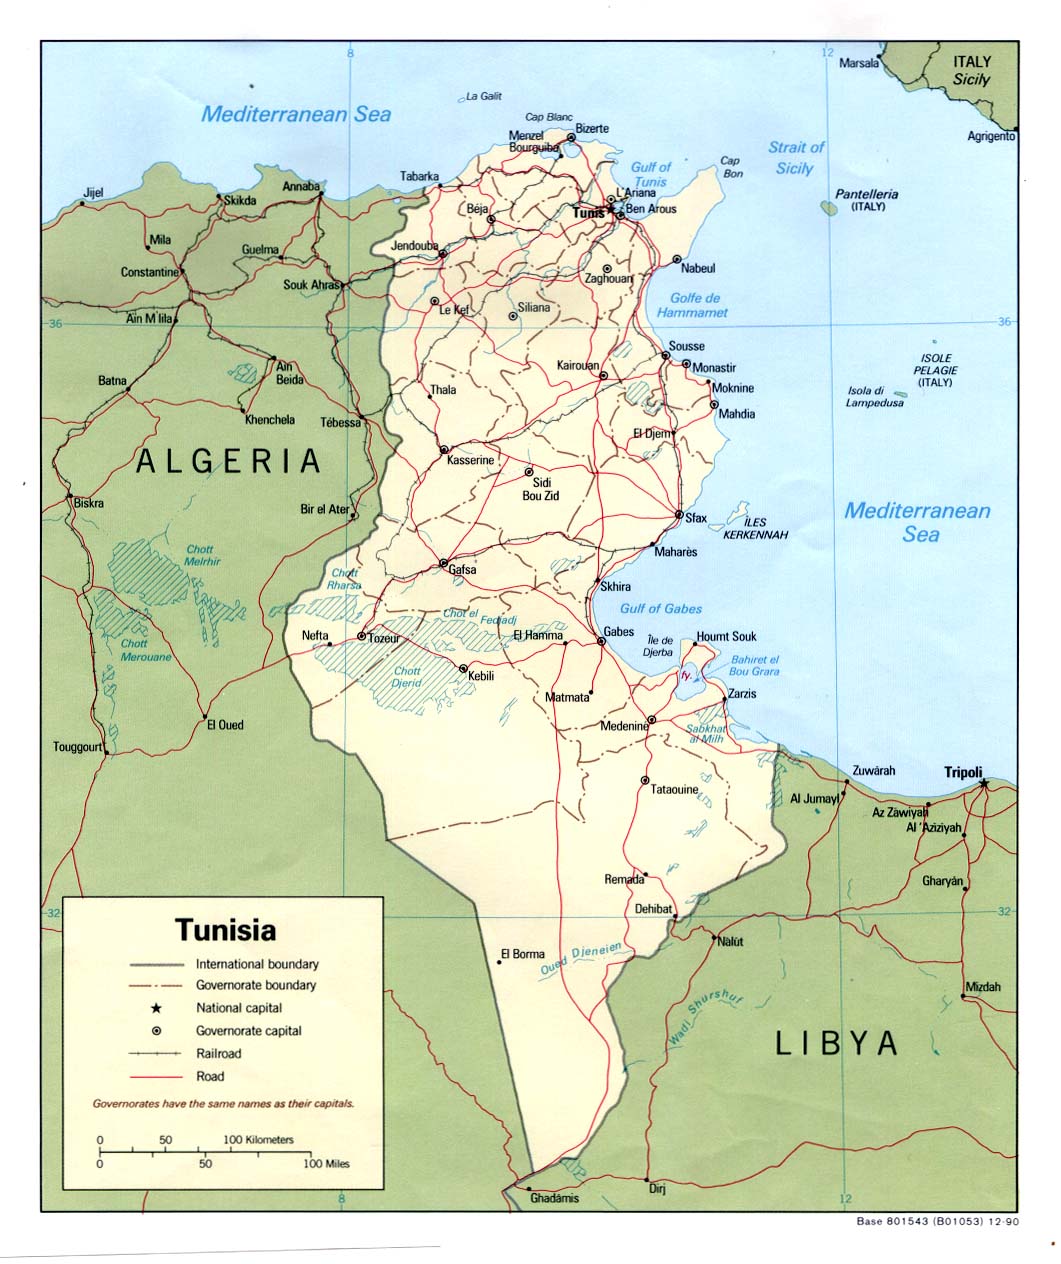 tunisie carte